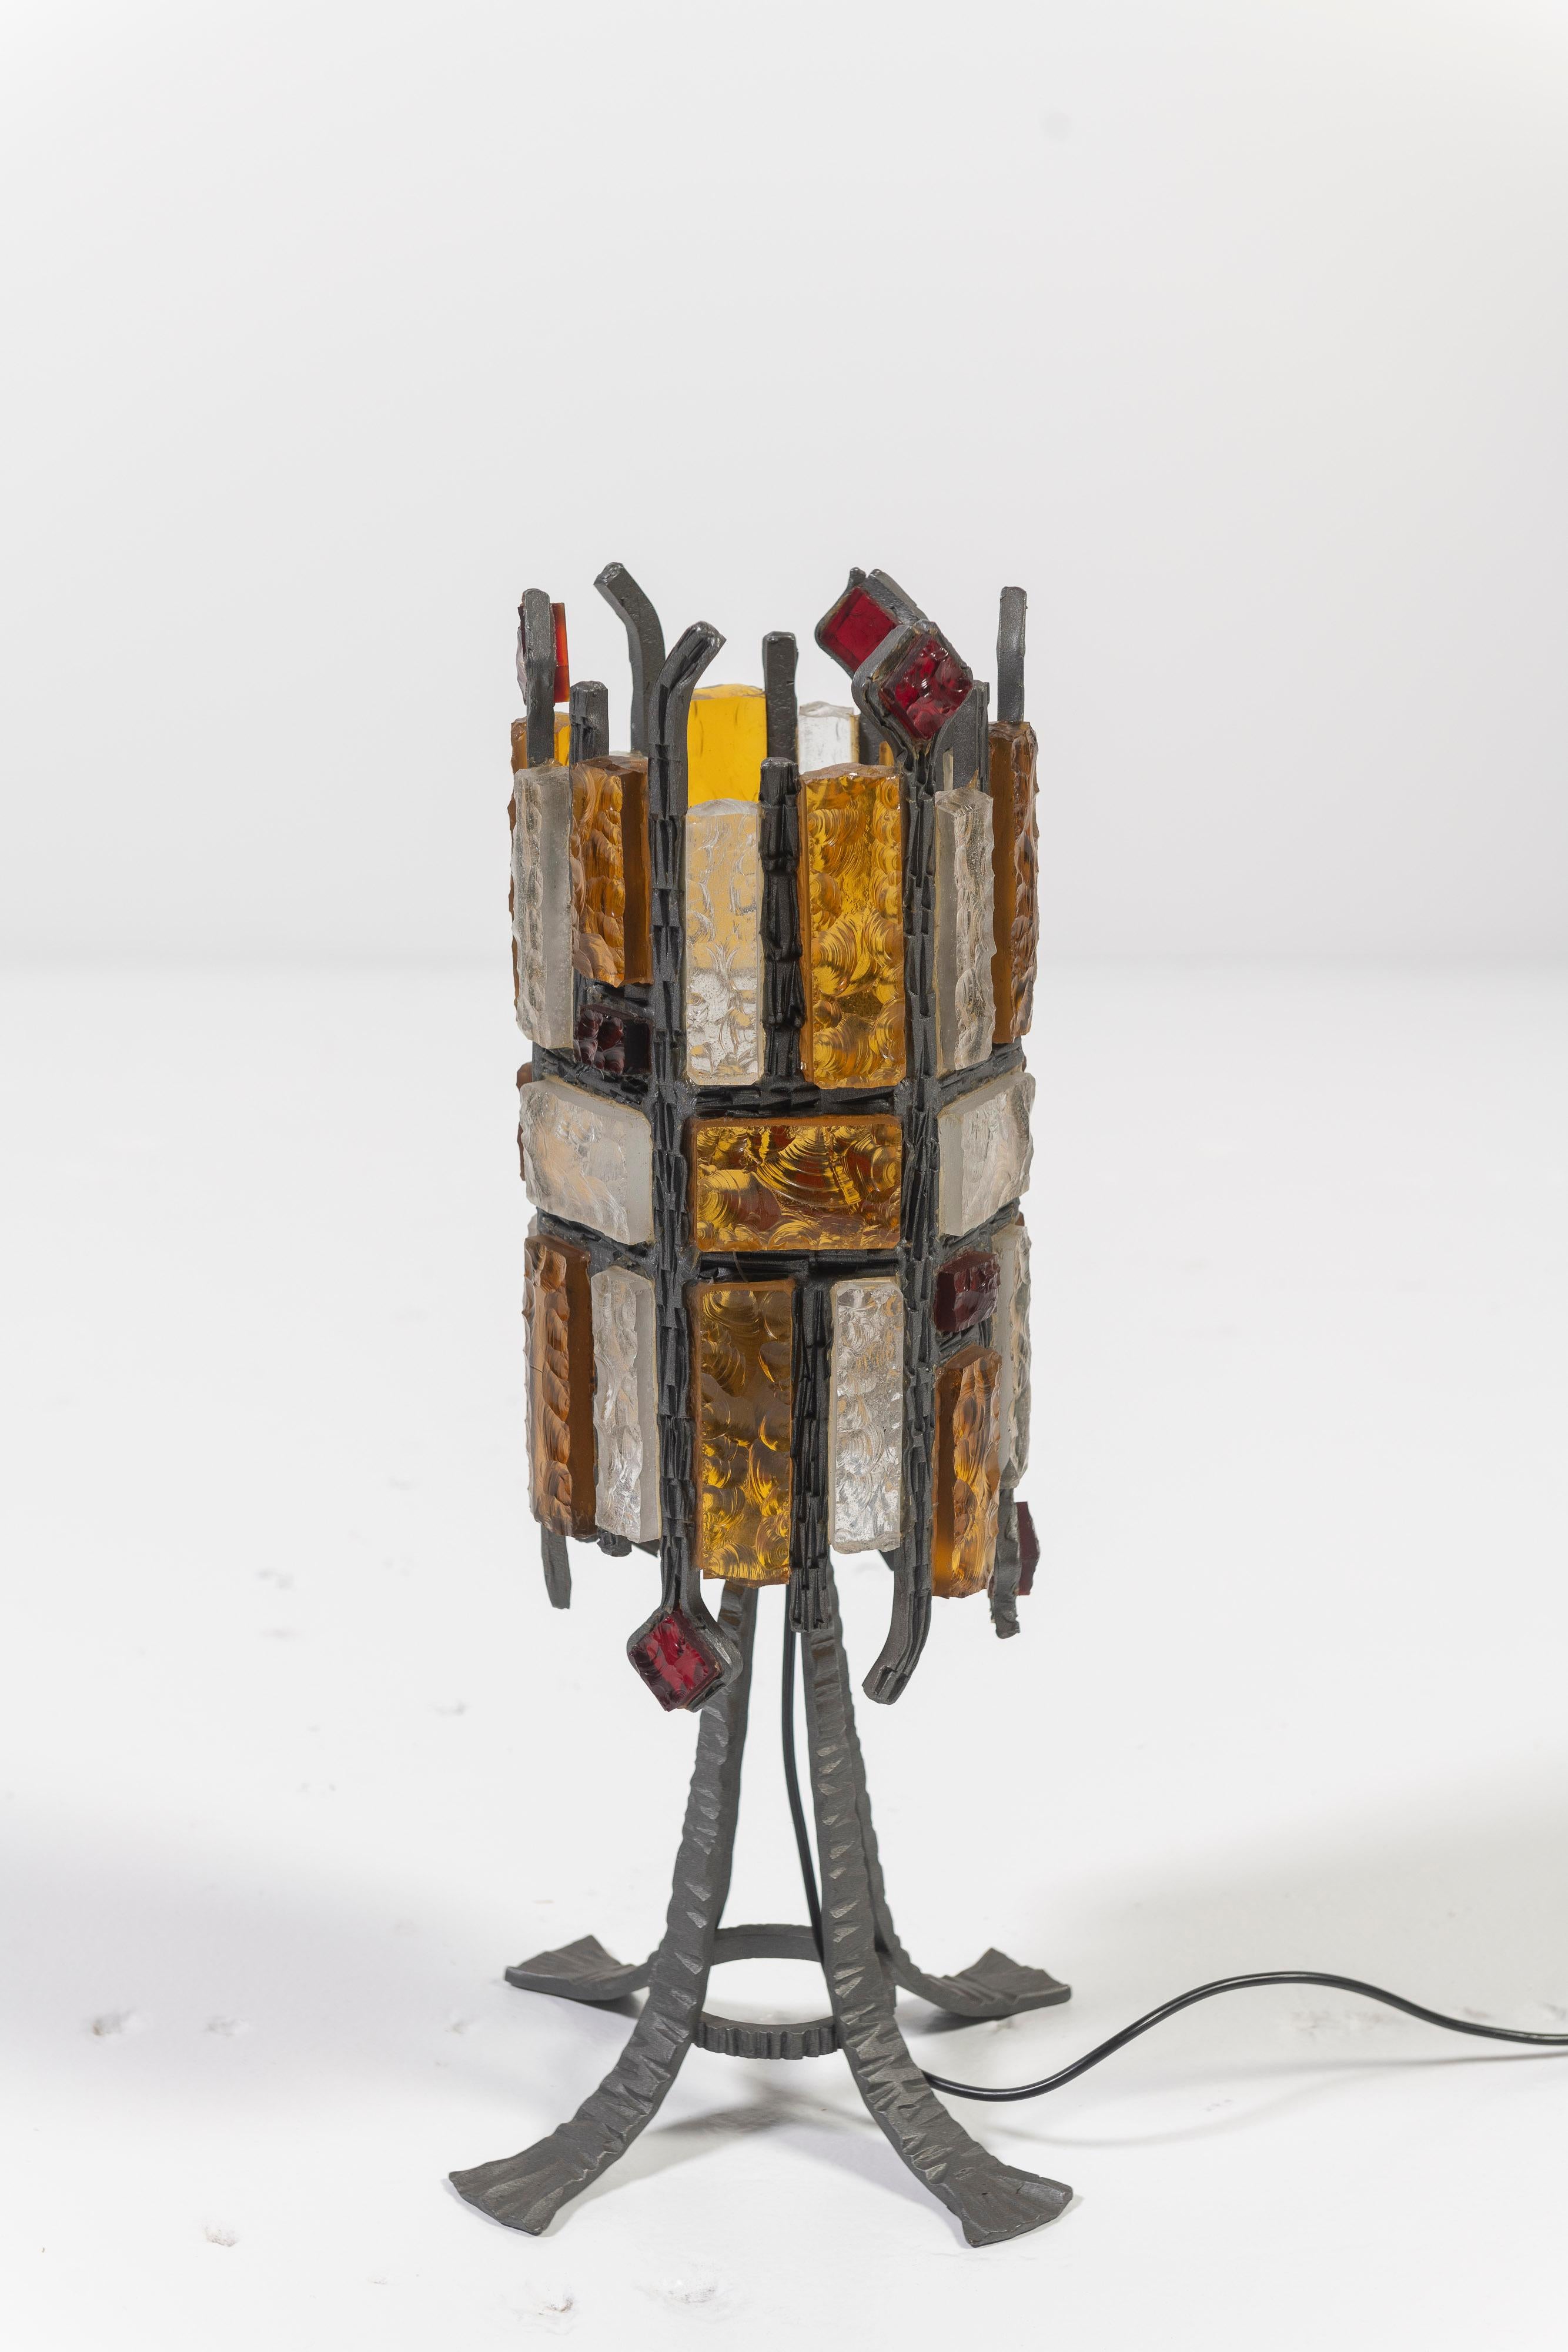 Lampe de table brutaliste unique, avec des matériaux bruts et texturés, une silhouette trapue et toutes les couleurs d'une flamme, rouge, ambre et ivoire - parfaite pour apporter un peu de mystère et de chaleur à un endroit spécial dans n'importe